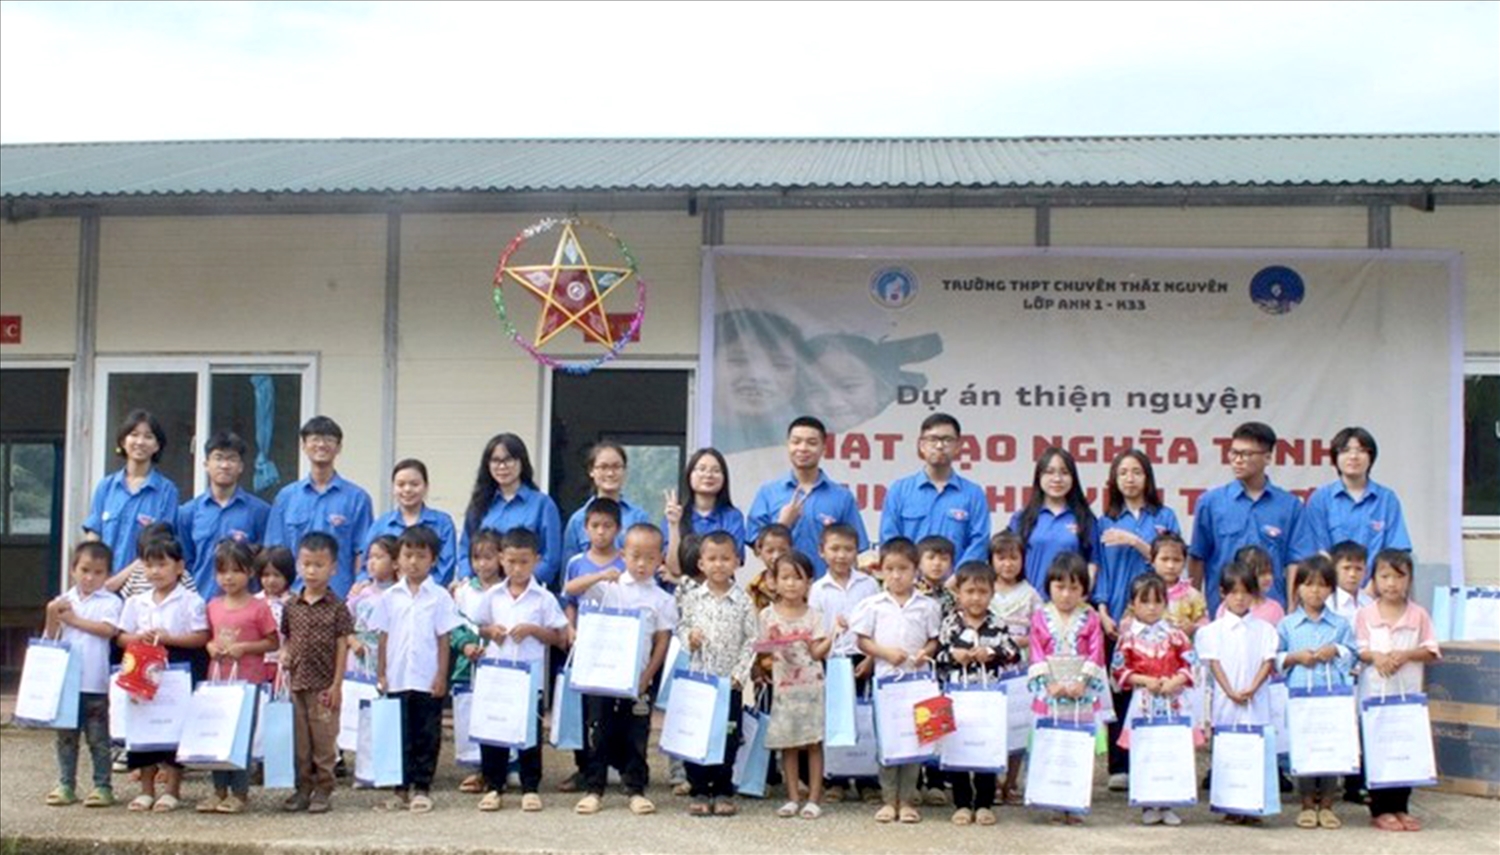 Các em học sinh của điểm trường Lũng Hoài nhận quà của các anh chị lớp 12 Anh 1 trường THPT Chuyên Thái Nguyên.